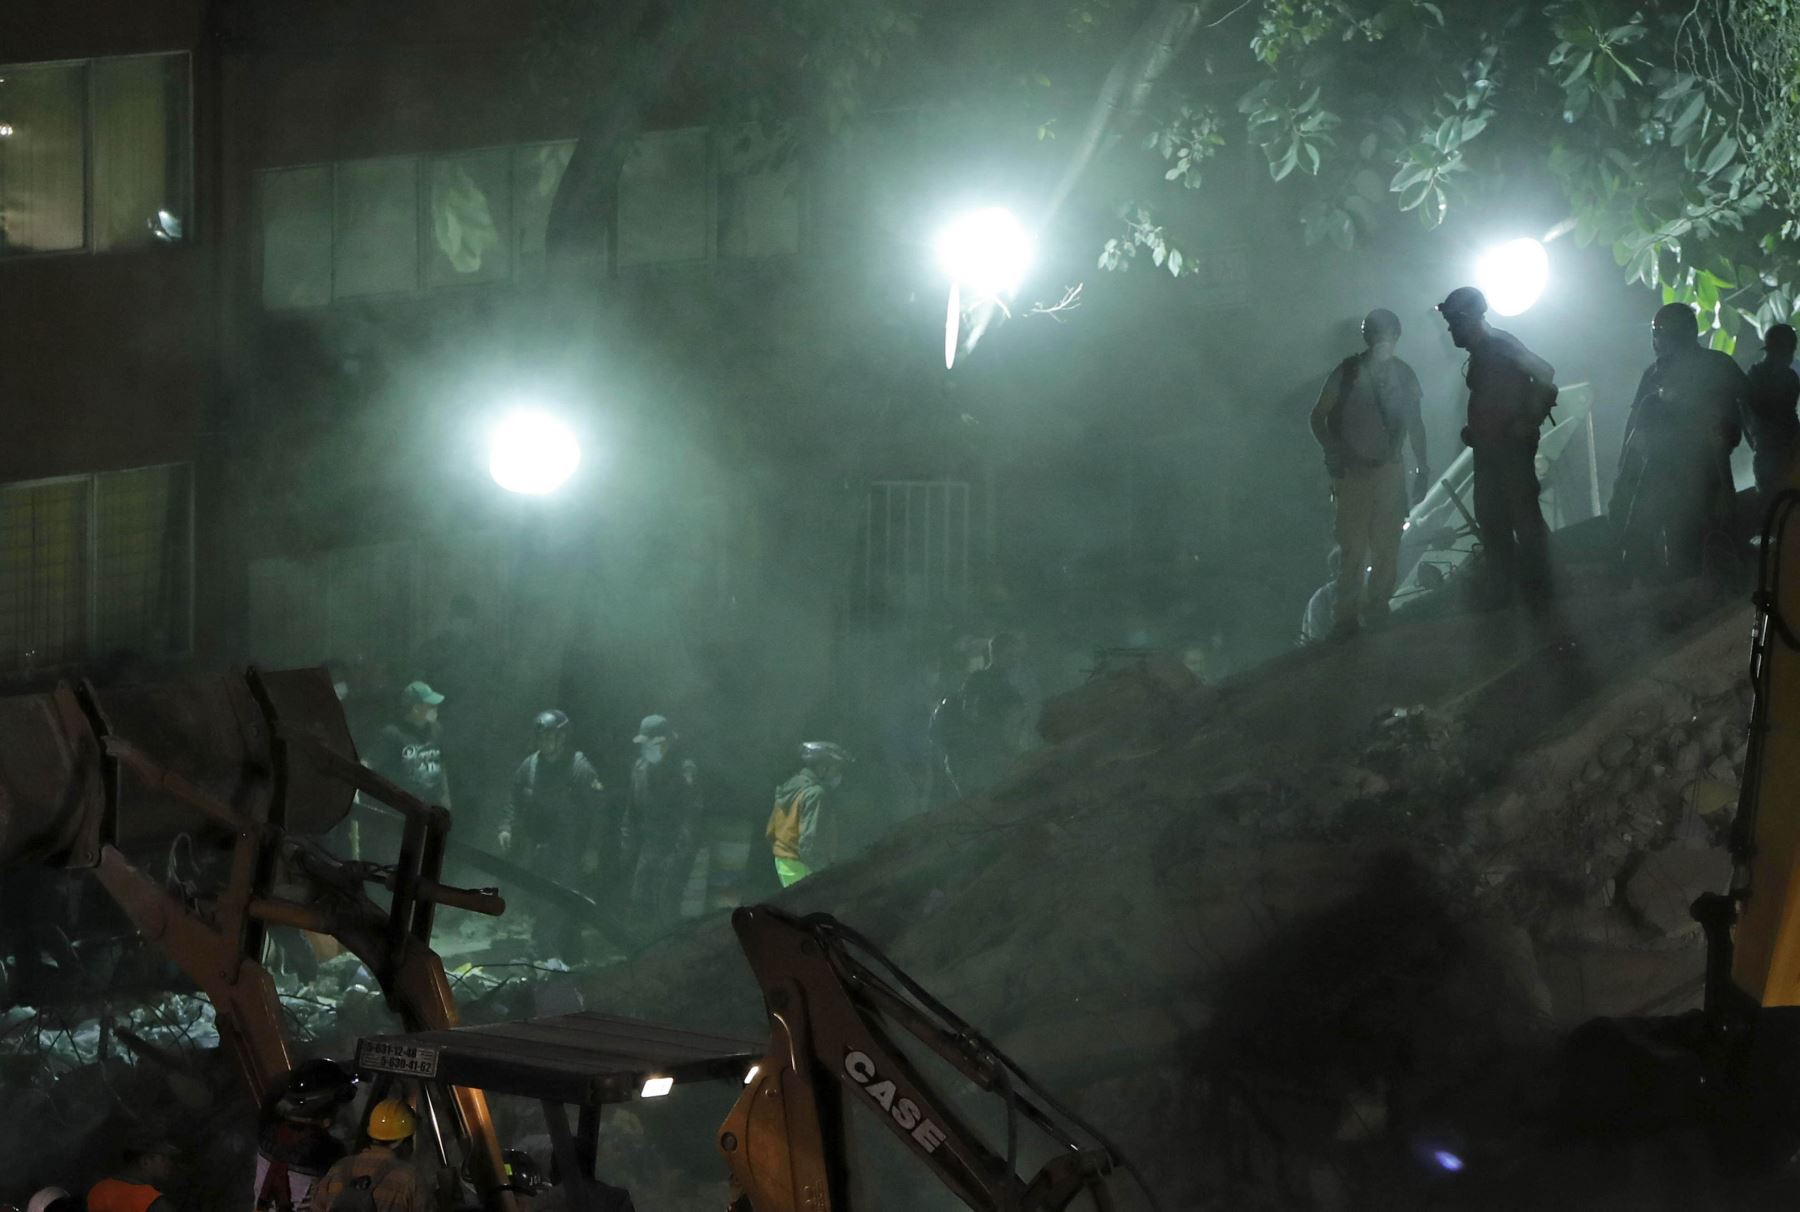 Cientos de mexicanos, entre brigadistas y voluntarios, continúan intentando rescatar a personas con vida de los edificios colapsados tras el terremoto. Foto: Efe.